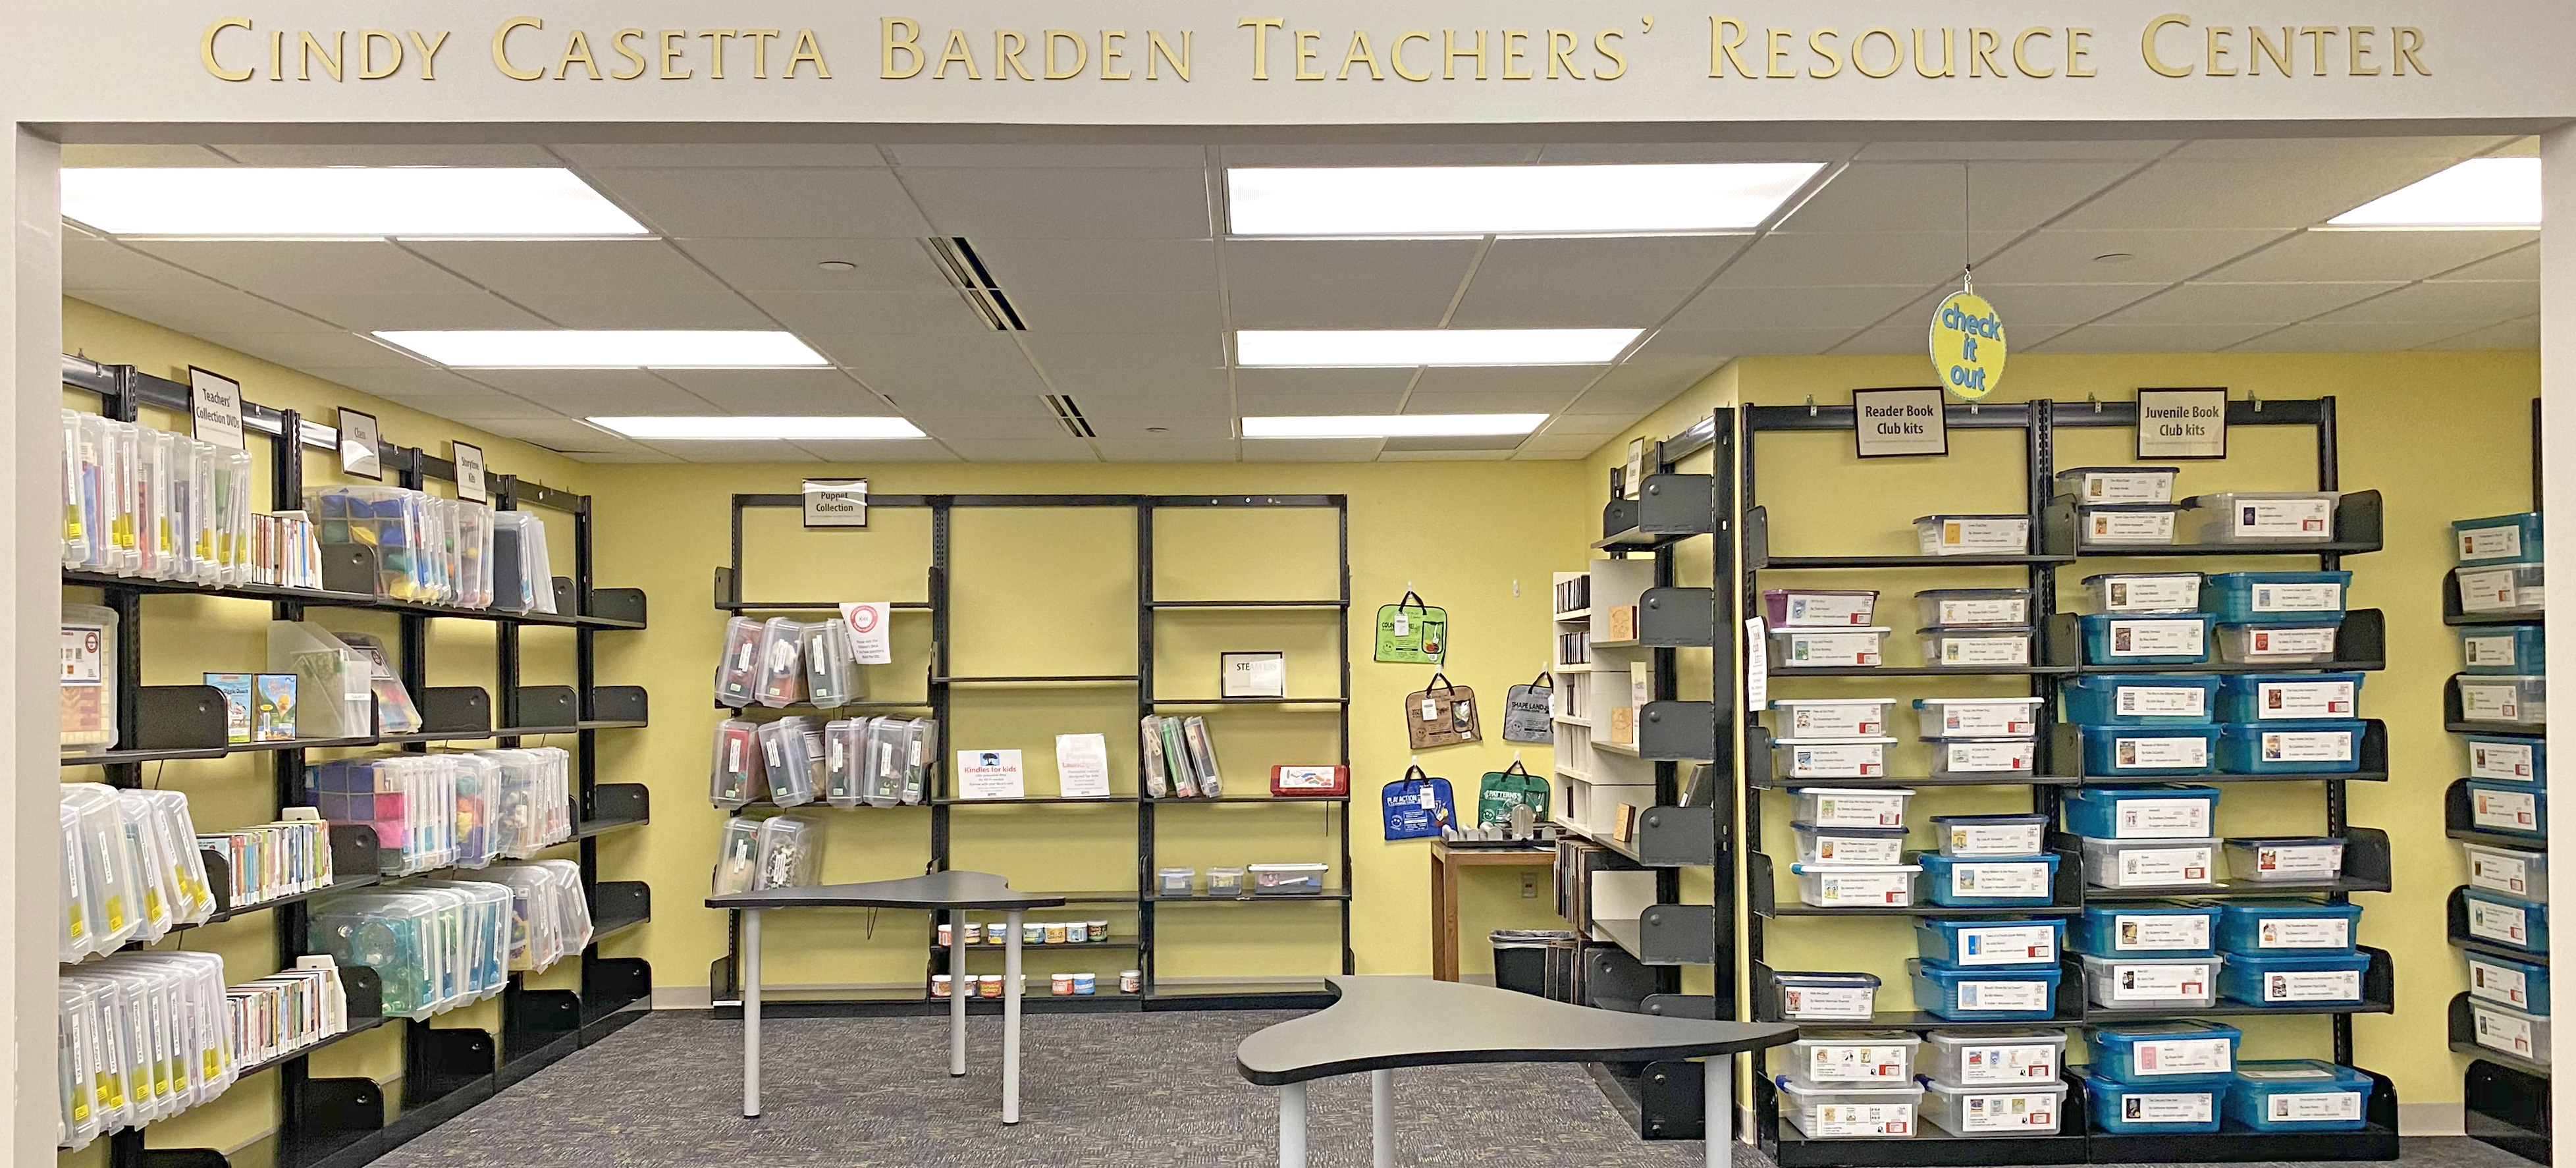 Cindy Casetta Barden Teacher Resource Center